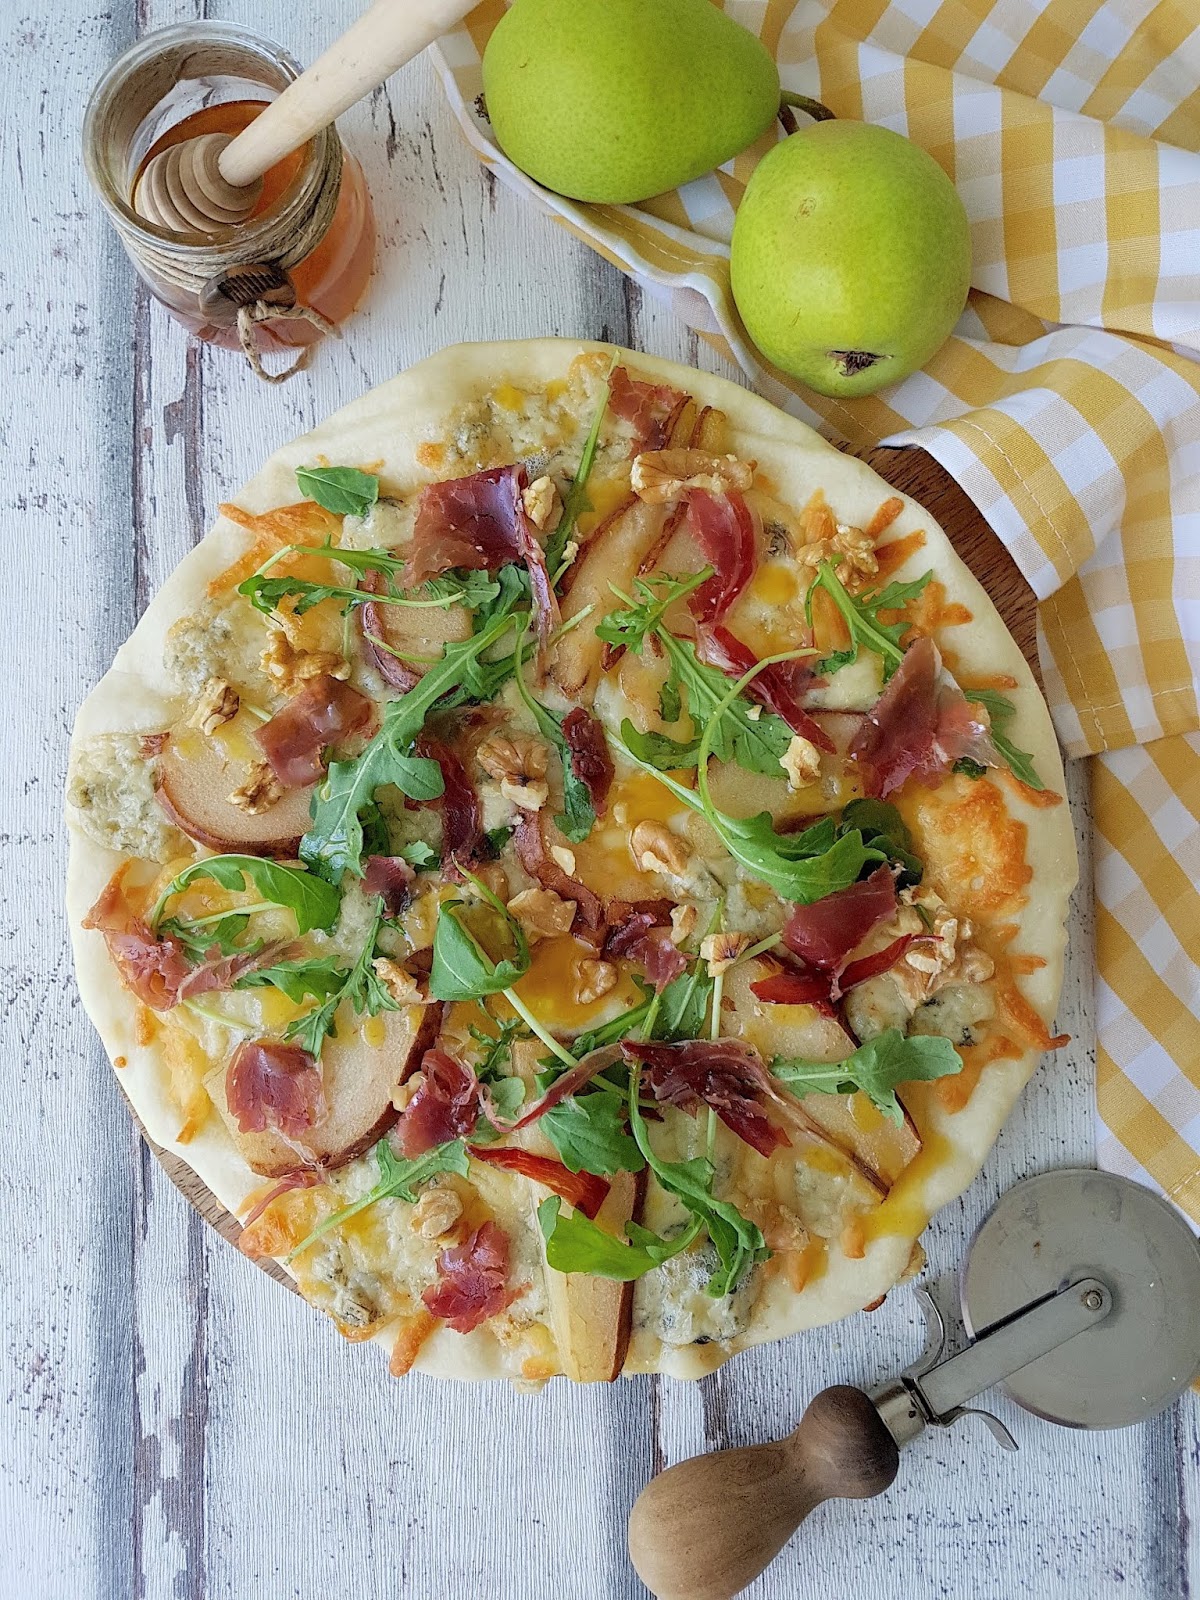 Pizza de gorgonzola, pera y jamón ibérico - Cocinando con Neus